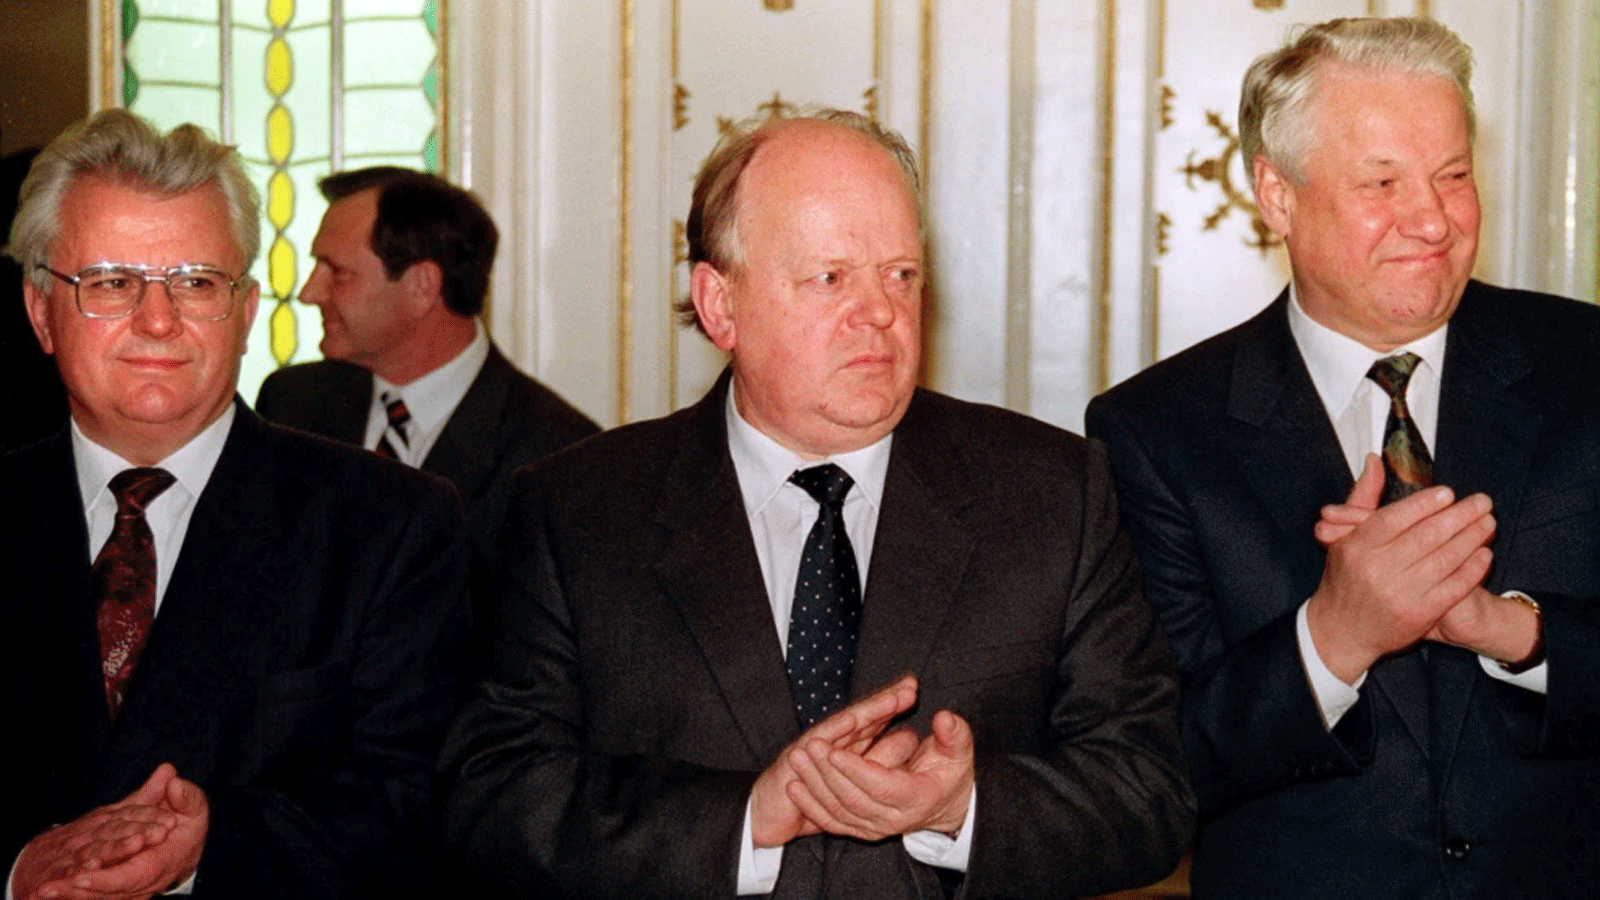 رئيس بيلاروسيا الراحل ستانيسلاو شوشكيفيتش يتوسط الرئيس الأوكراني ليونيد كرافتشوك والرئيس الروسي بوريس يلتسين، في 8 كانون الأول (ديسمبر) 1991.